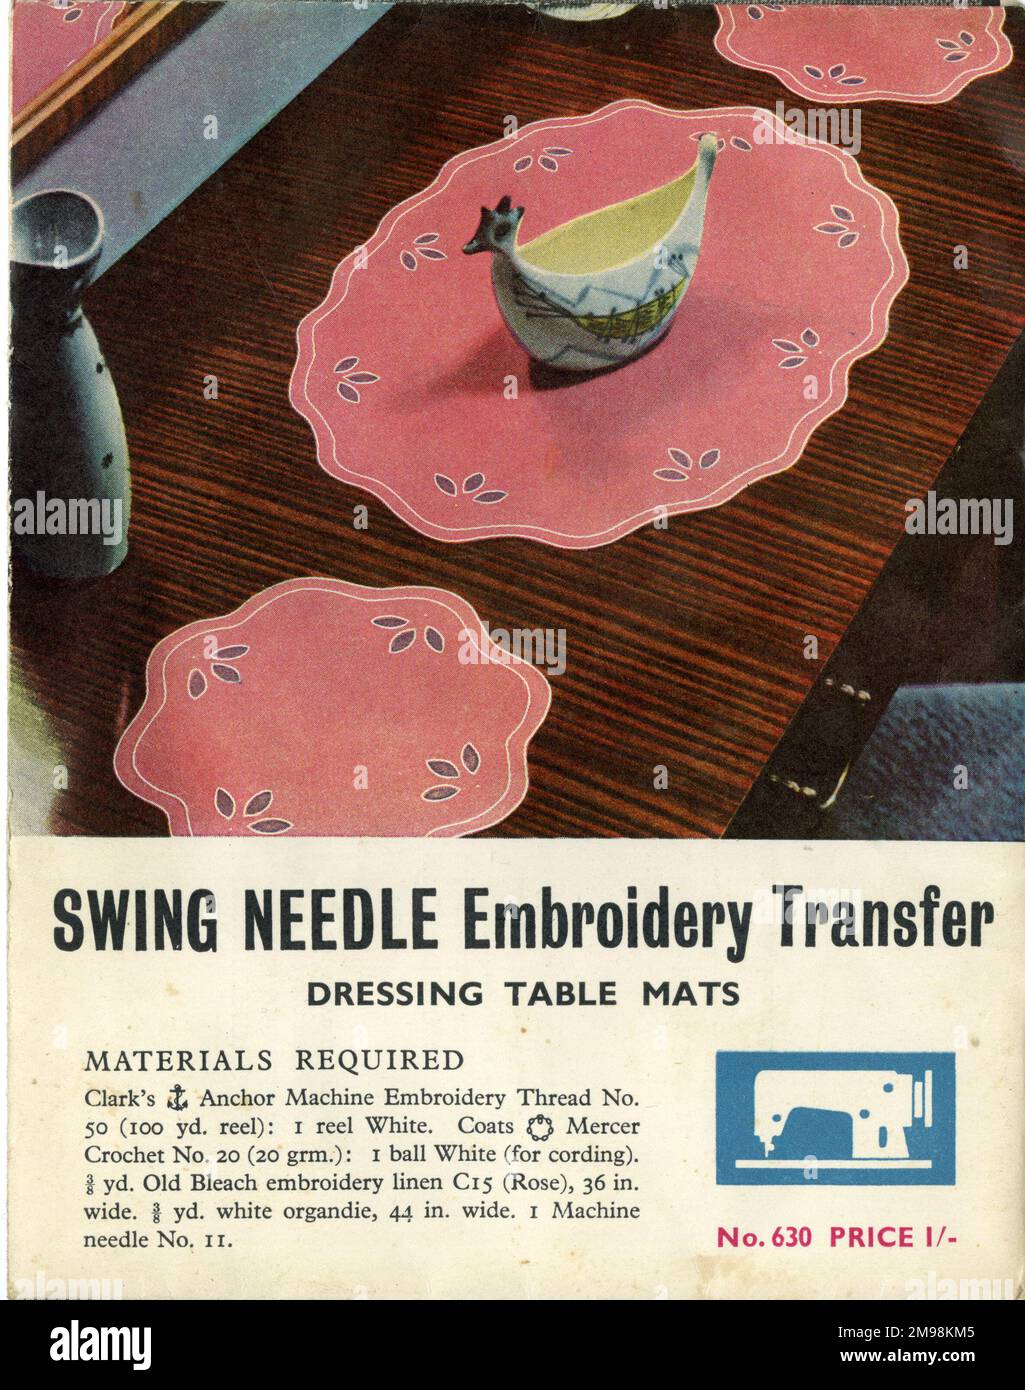 Publicidad, Esteras de tocador, Swing Needle Embroidery Transfer. Foto de stock